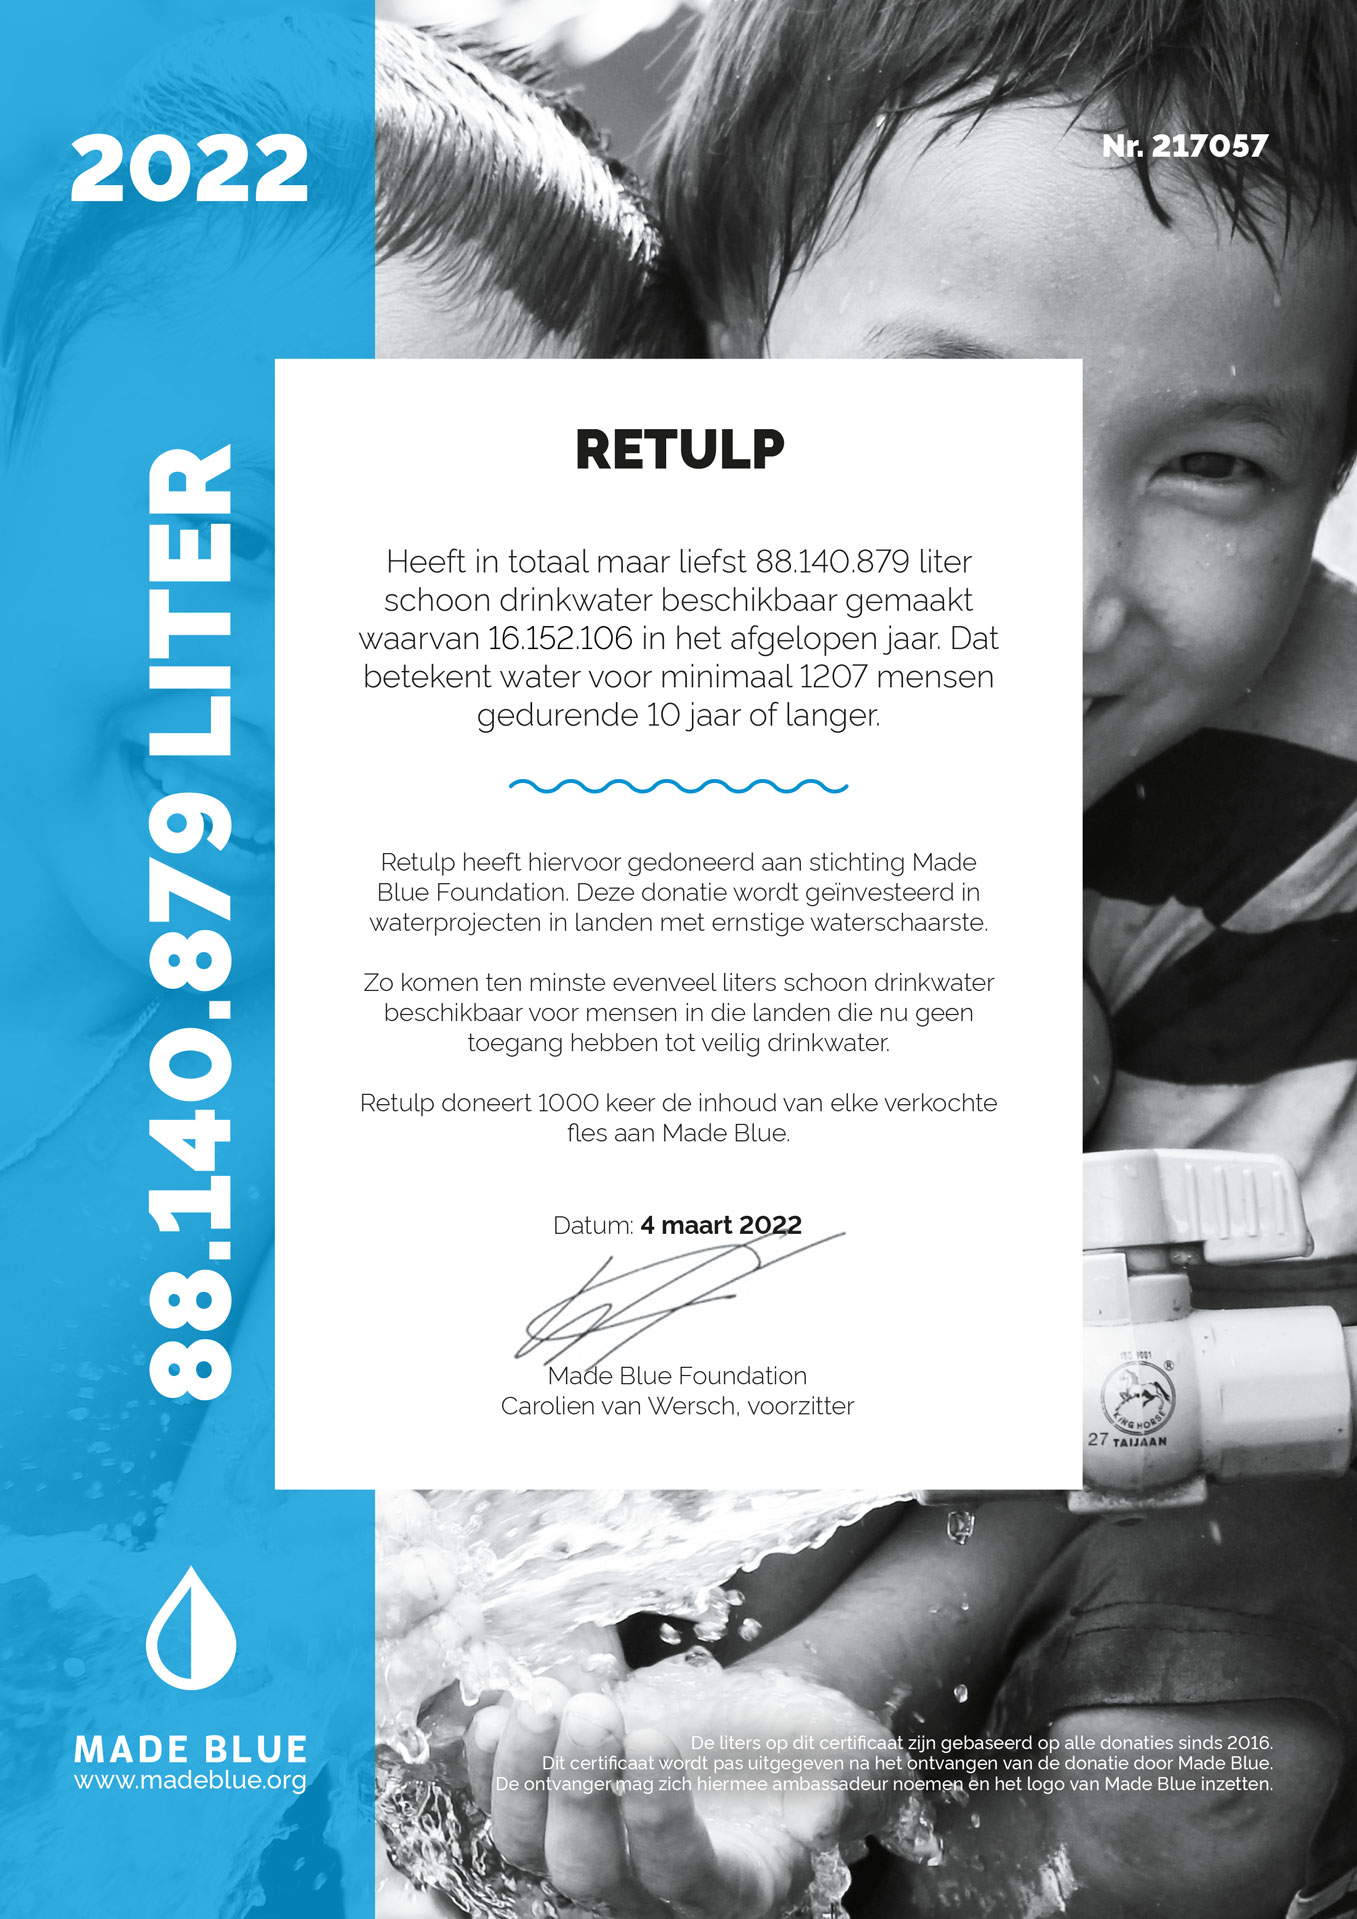 Made Blue Certification through 2022 - Retulp